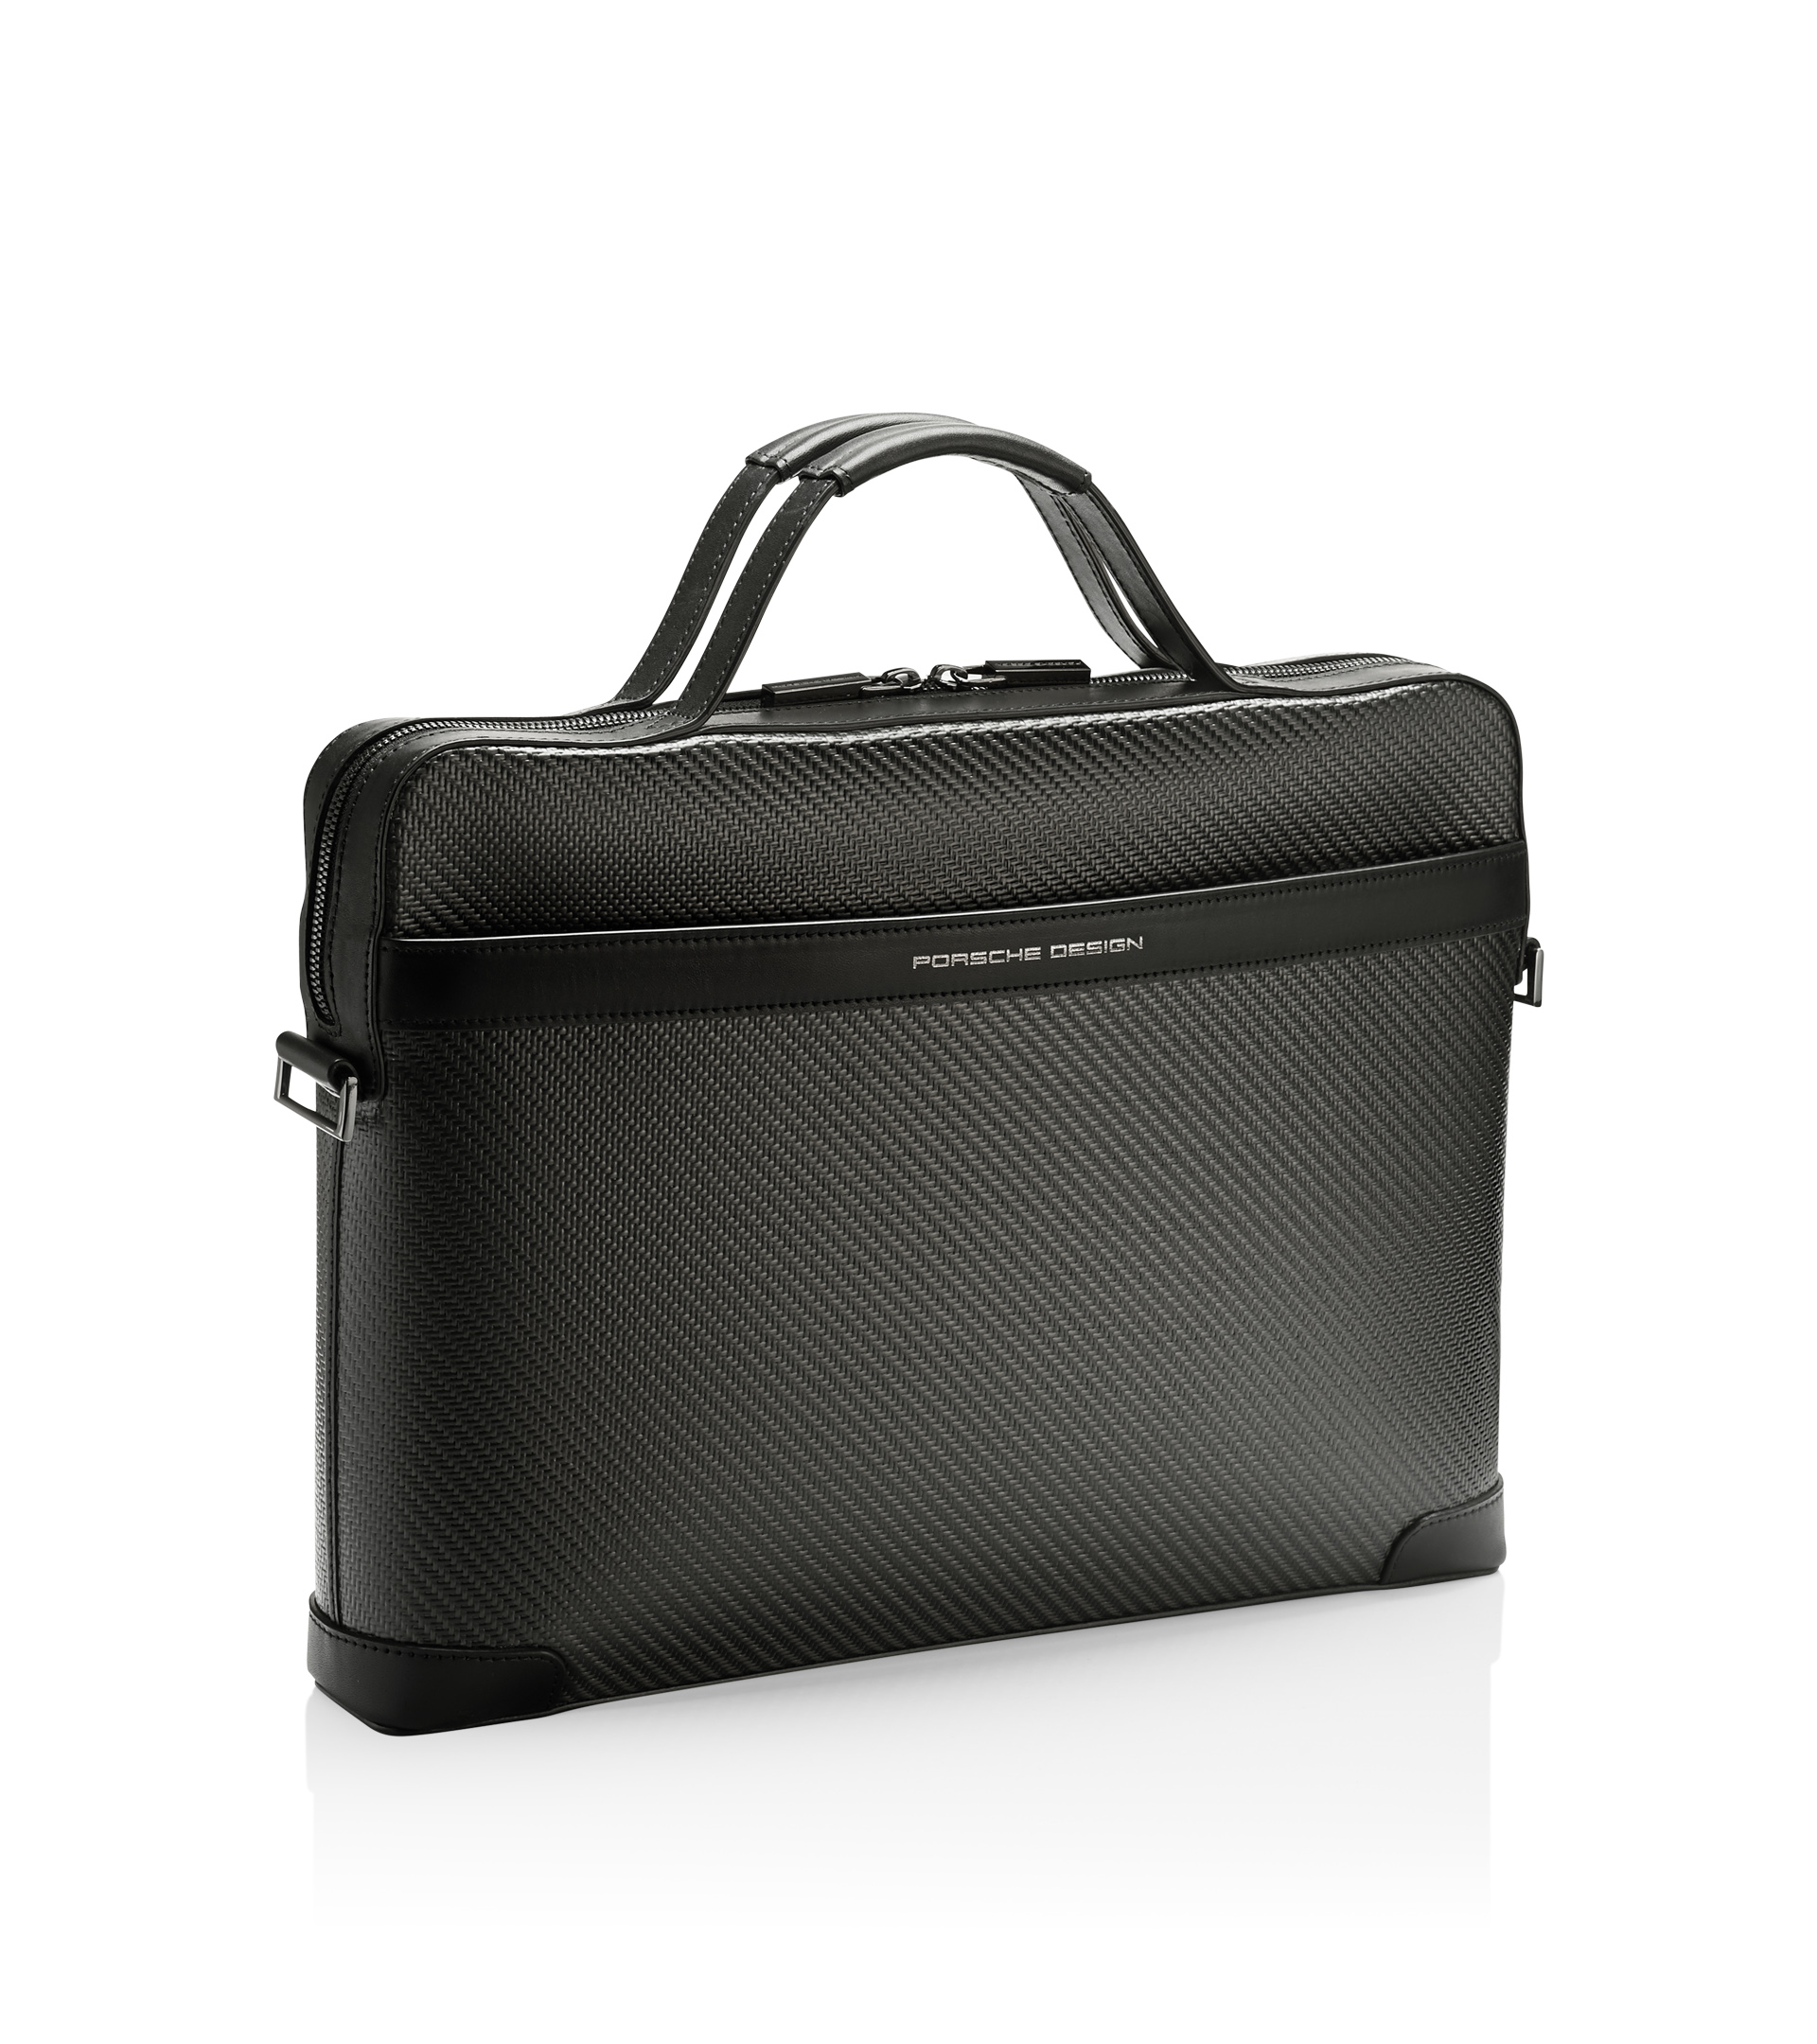 Carbon Briefcase S - Luxury Business Bags for Men | Porsche Design 